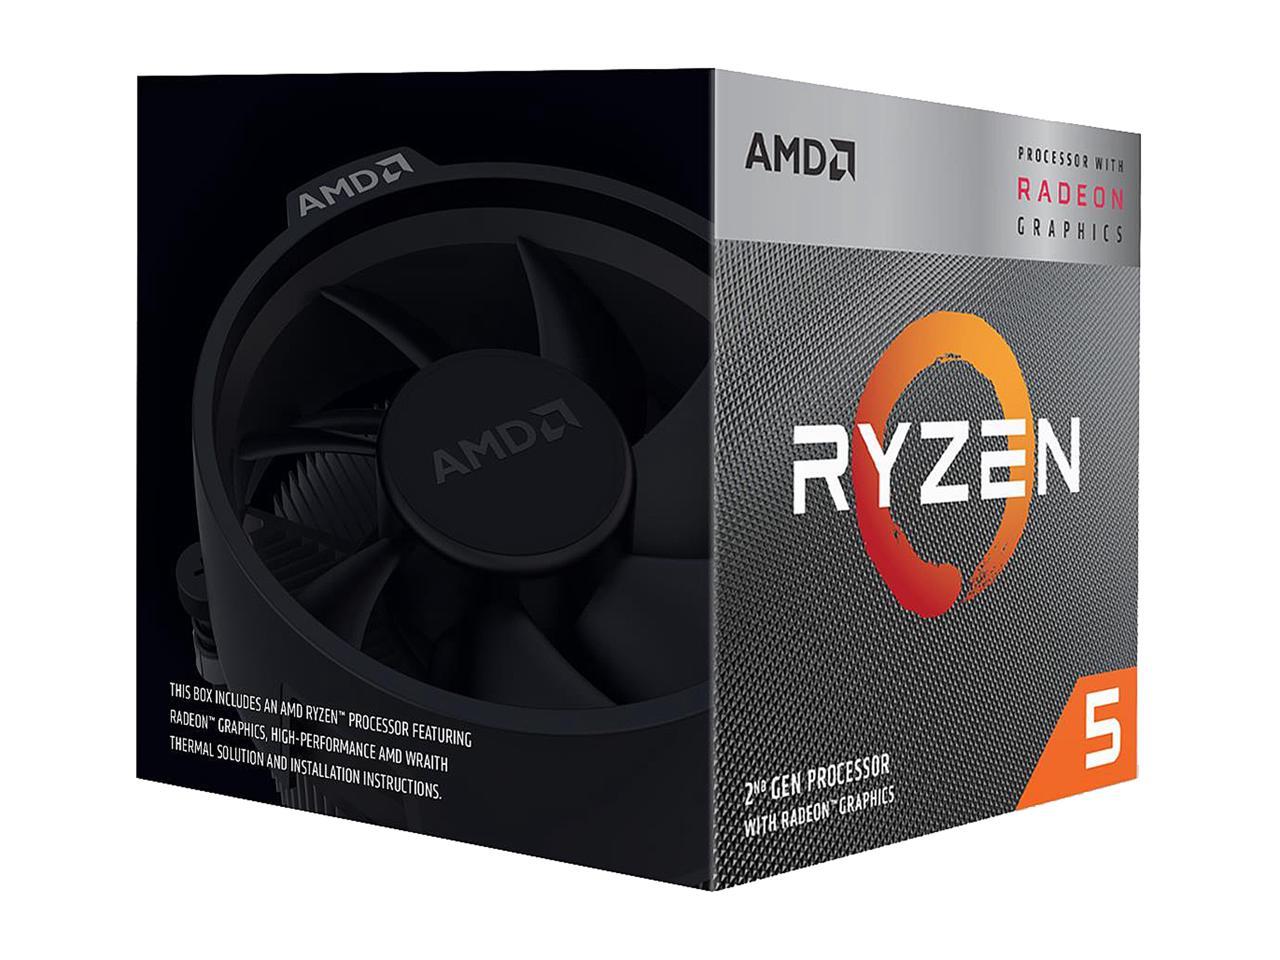 AMD Ryzen 5 2nd Gen with Radeon Graphics - RYZEN 5 3400G Picasso (Zen+)  4-Core 3.7 GHz (4.2 GHz Max Boost) Socket AM4 65W YD3400C5FHBOX Desktop 